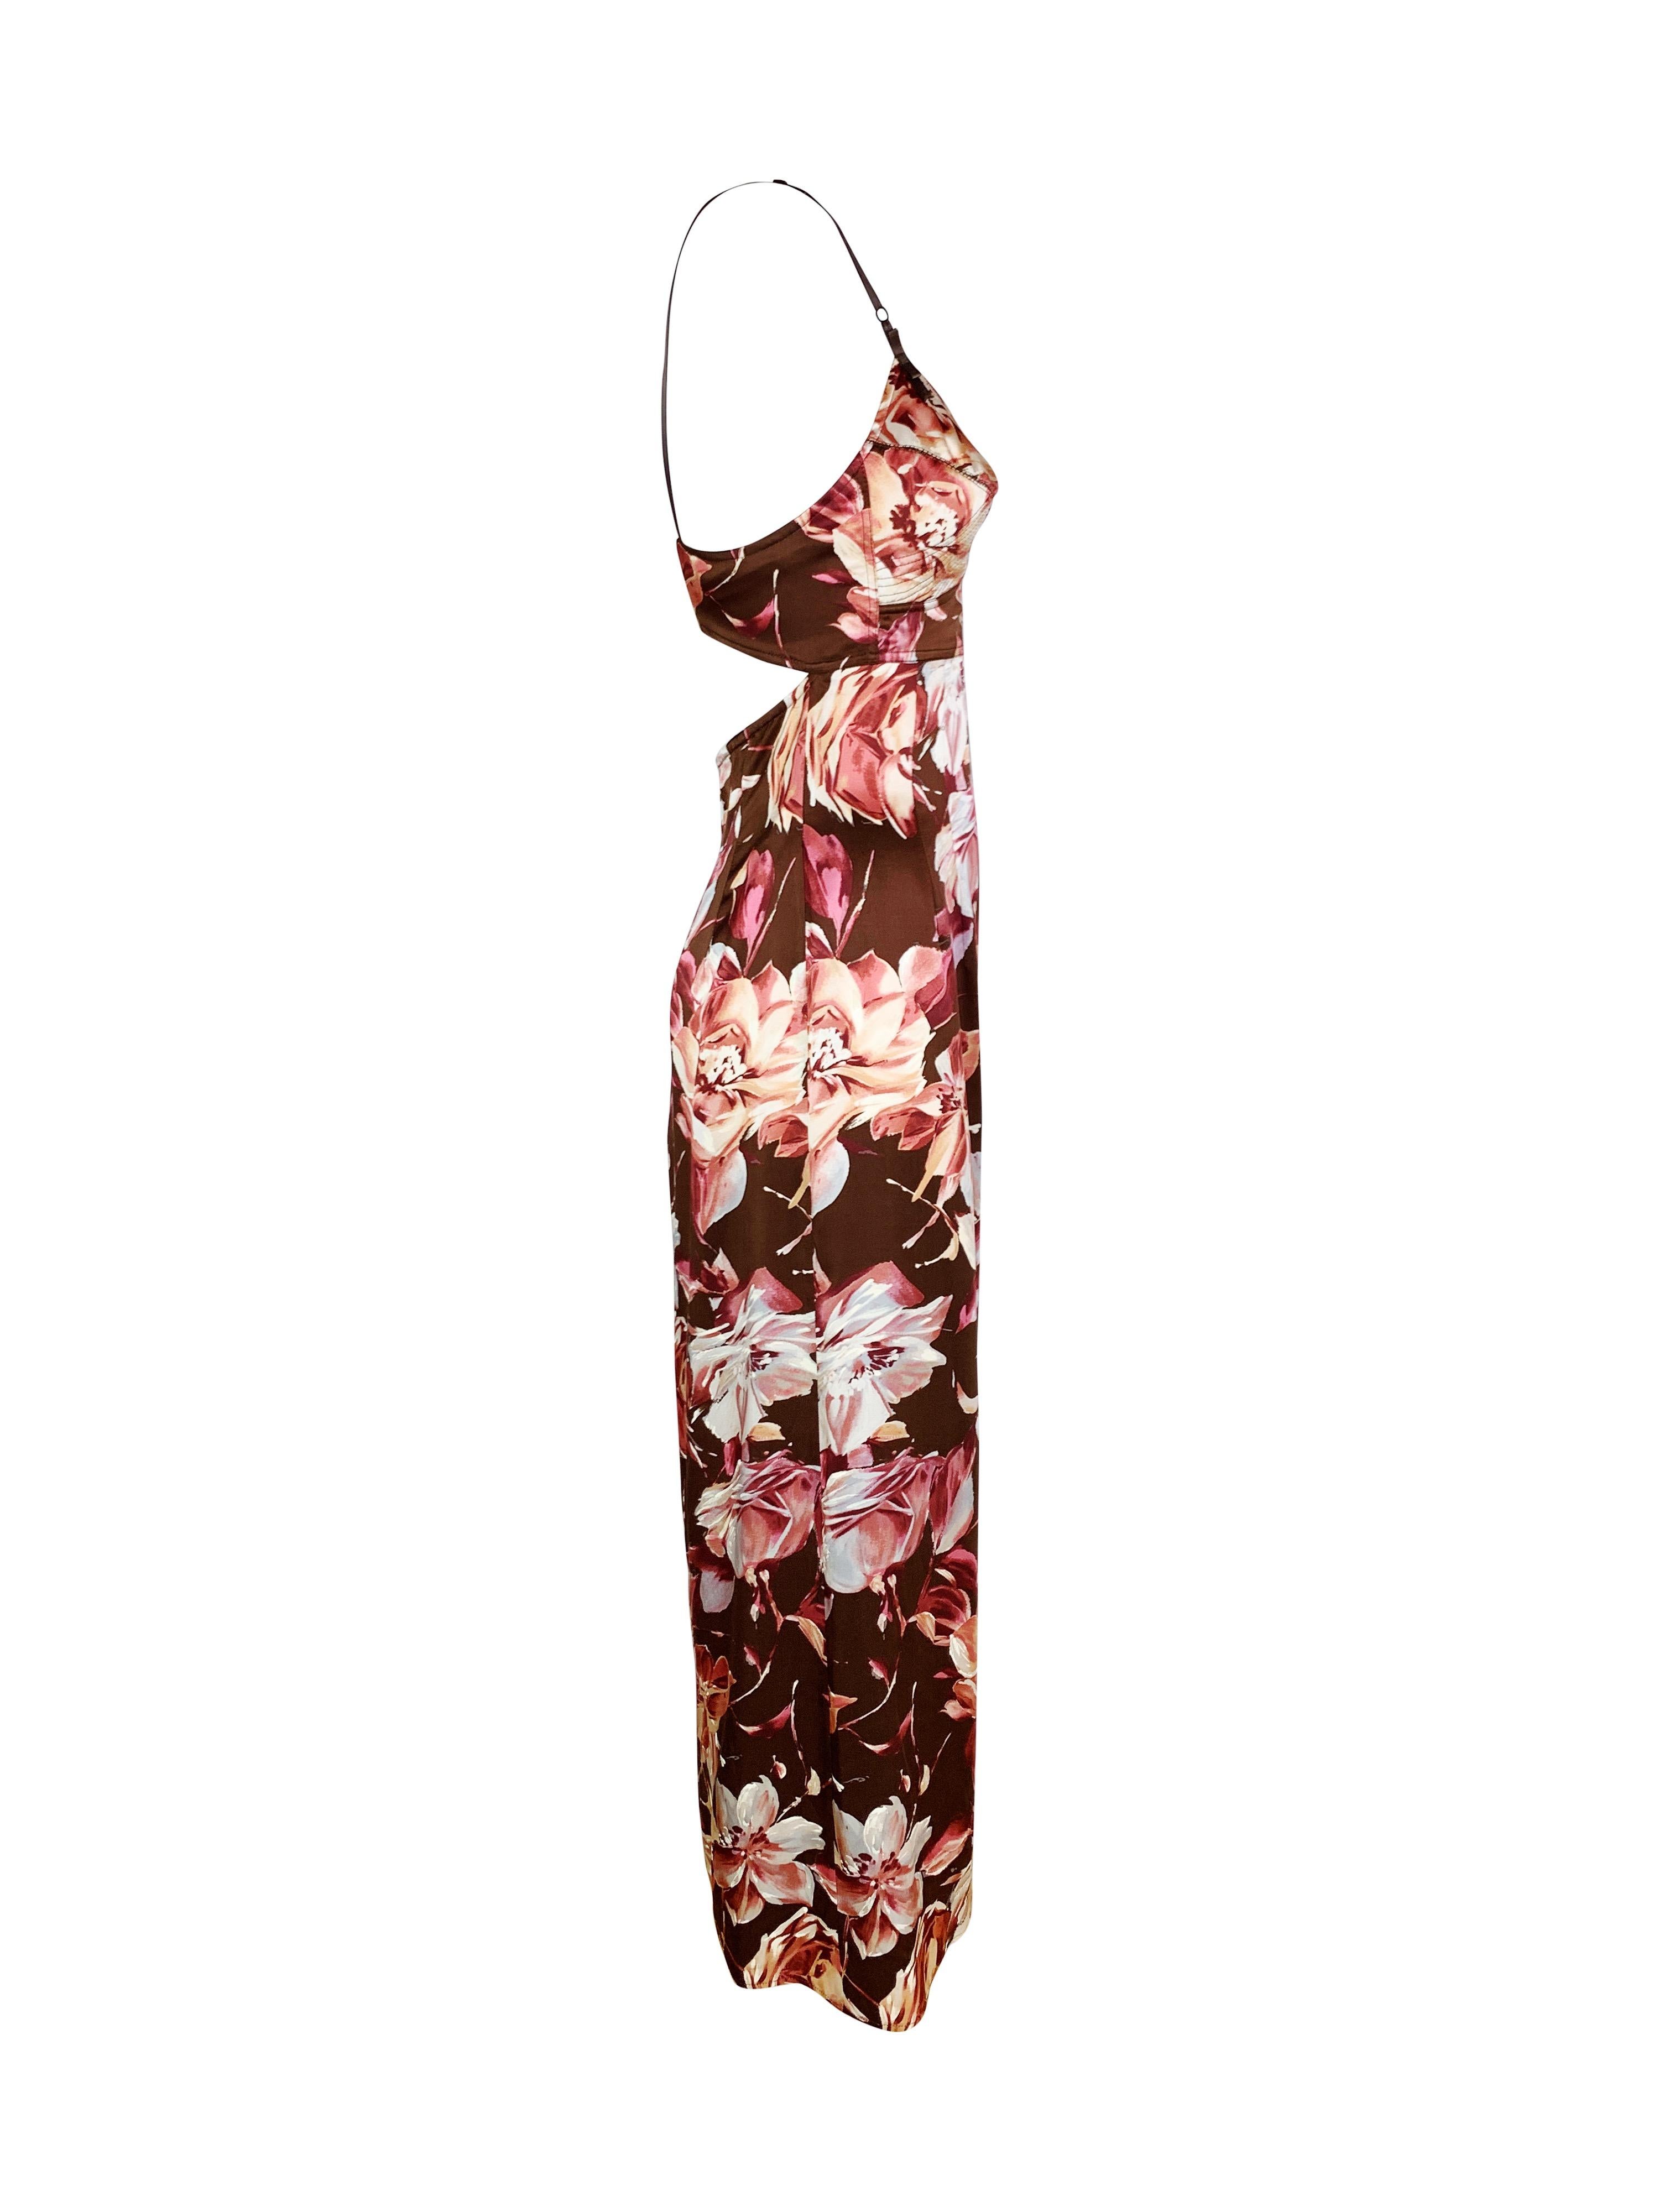 Eines der kultigsten Kleidungsstücke von Dolce & Gabbana.

Dieses wunderschöne Kleid aus 100% Seidensatin hat die Größe IT 42 und passt wie S/M. 

Abmessungen (flach auf eine Seite gelegt):

Quer über die Brust - 42 cm (16,5 in)
Taille - 35 cm (13,7